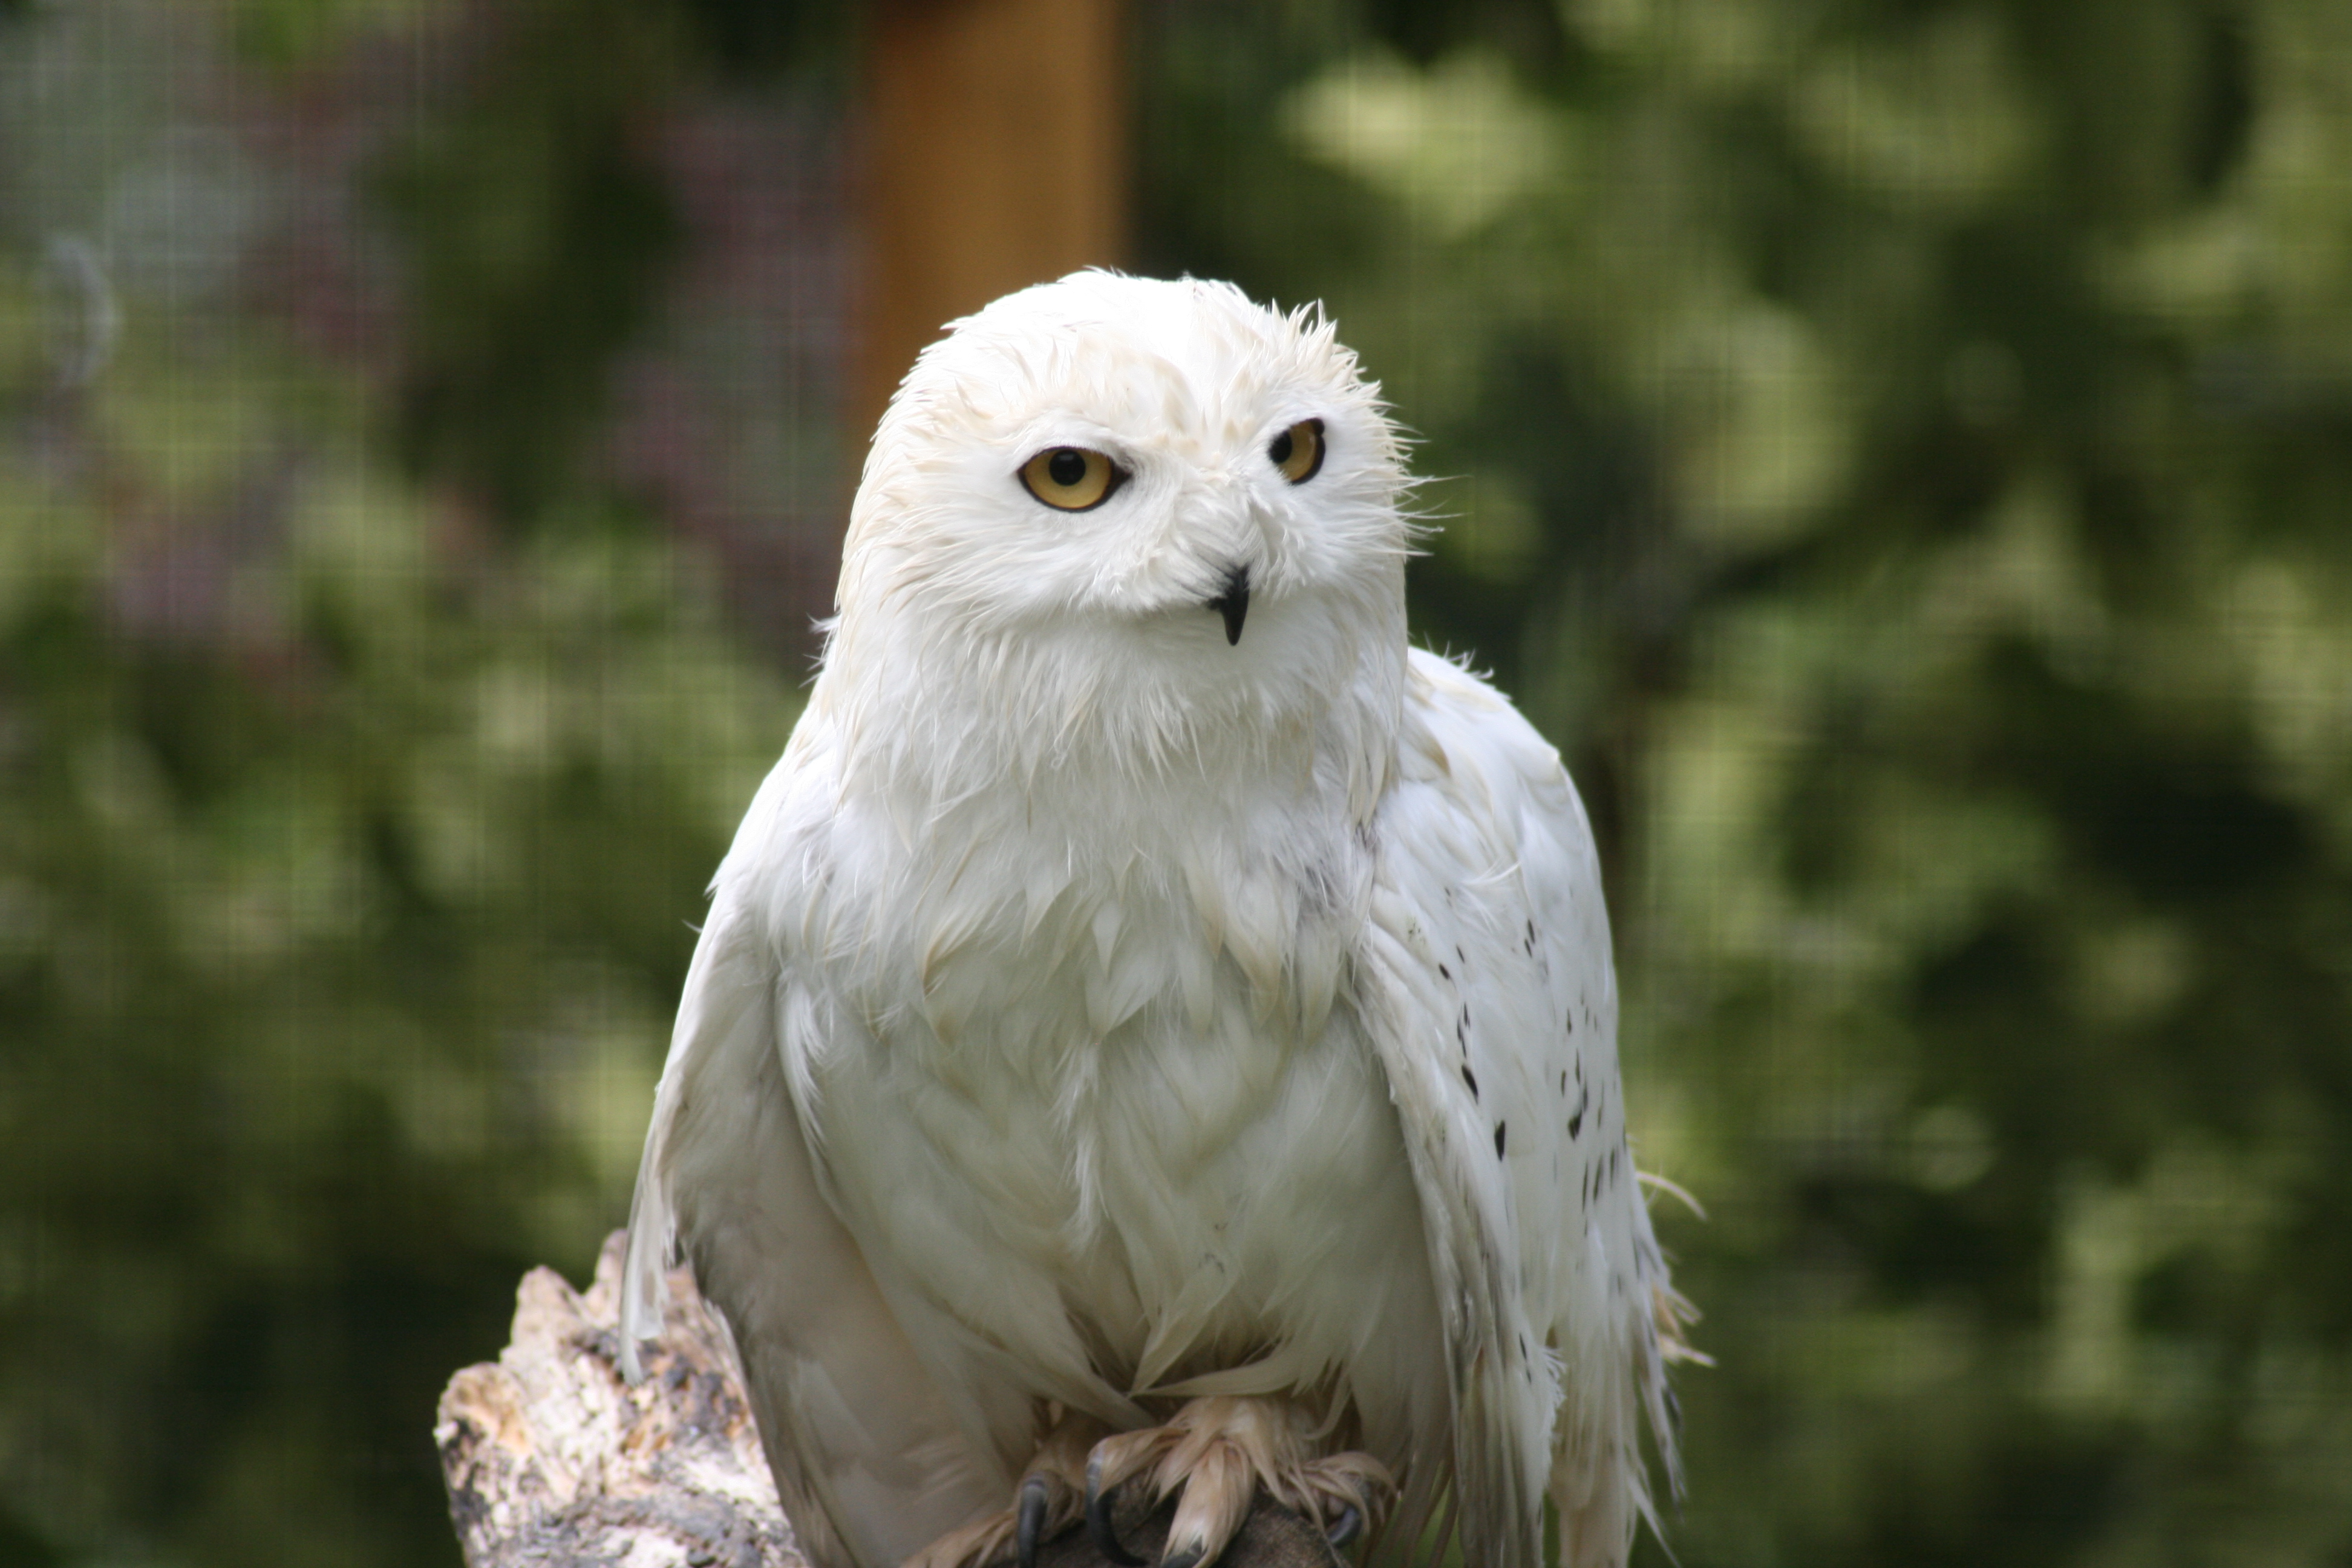 Species Spotlight - Snowy Owls | Birdland Park & Gardens